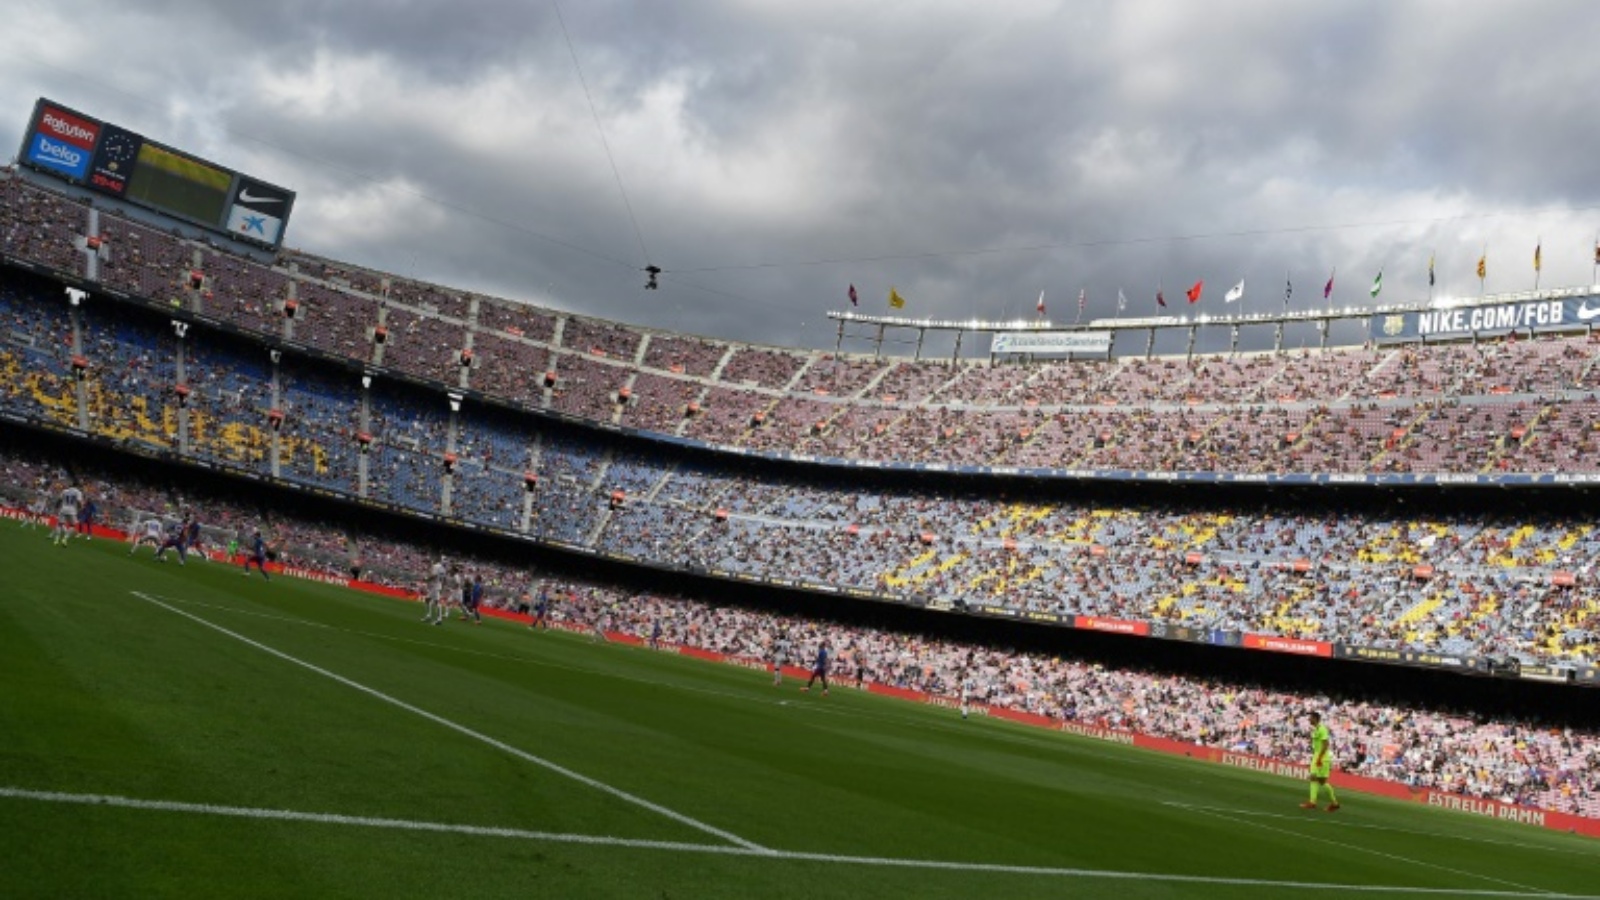 يأتي هذا القرار في الوقت المناسب لبرشلونة المتعثر، والذي سيخوض ثلاث مباريات في ثمانية أيام على ملعب كامب نو الذي يتسع لـ99 ألف متفرج.